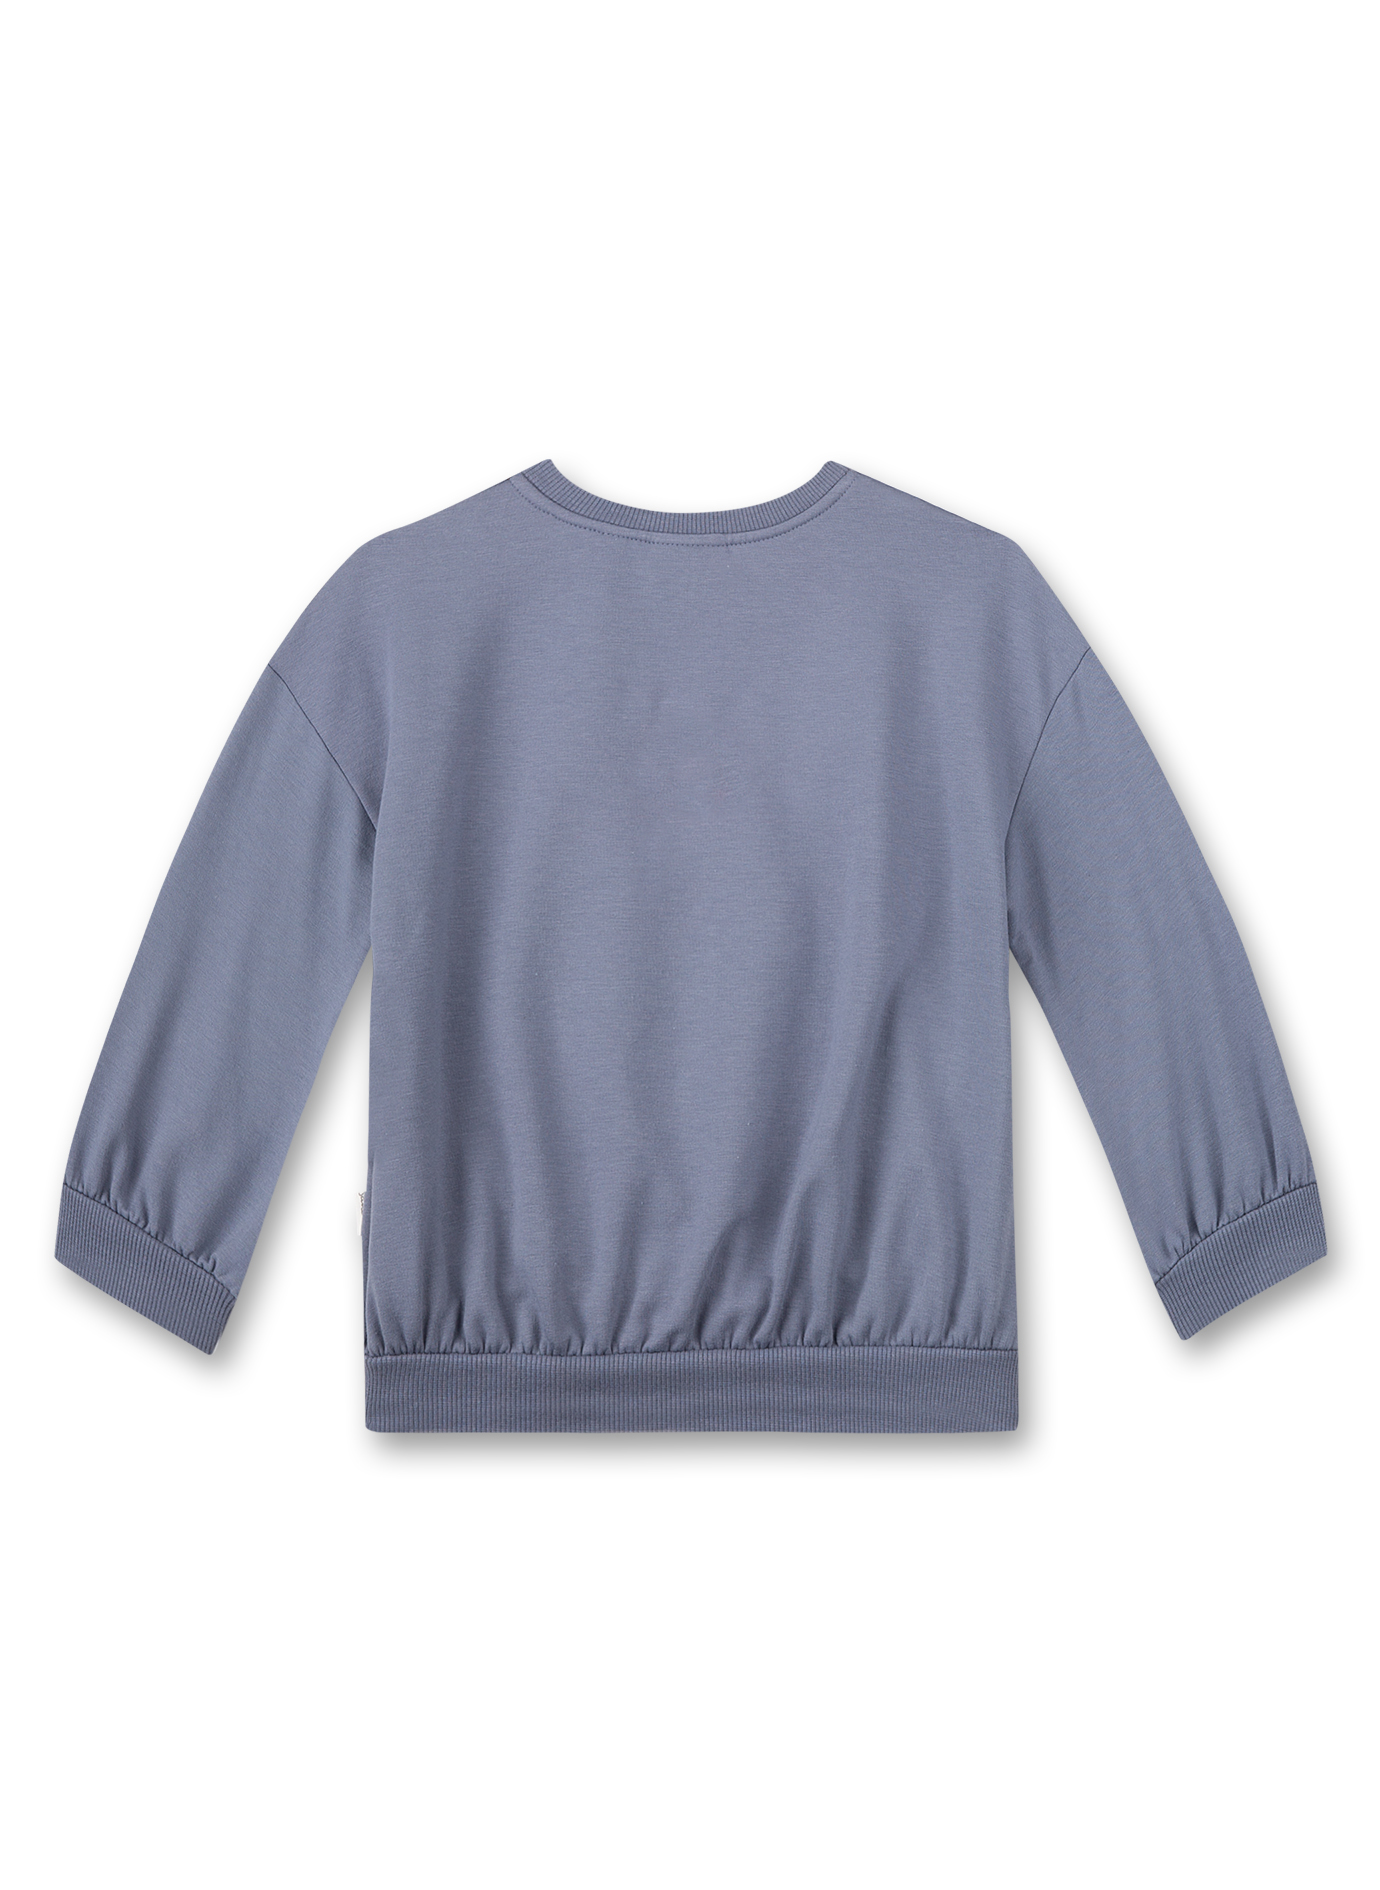 Mädchen-Sweatshirt Blau